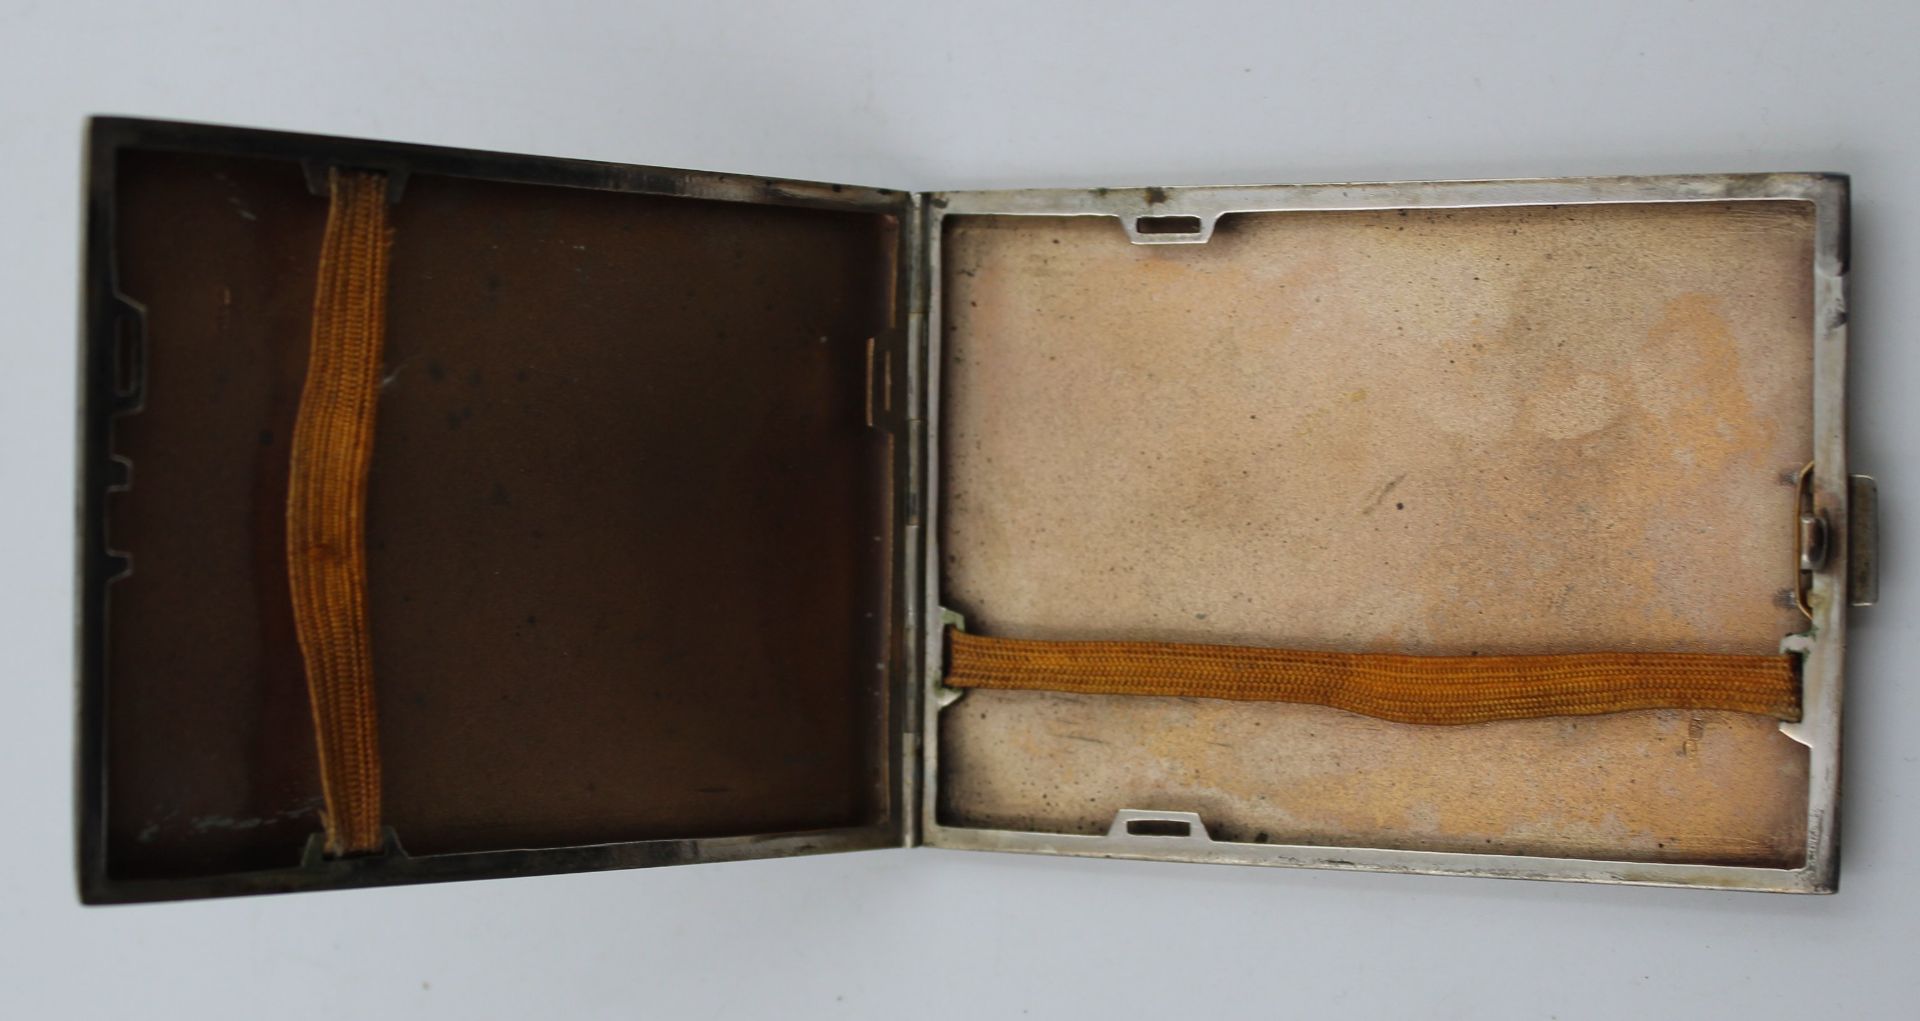 Zigaretten-Etui, versilbert, wohl 20/30er Jahre, ca. 7,5 x 10cm. - Bild 2 aus 3